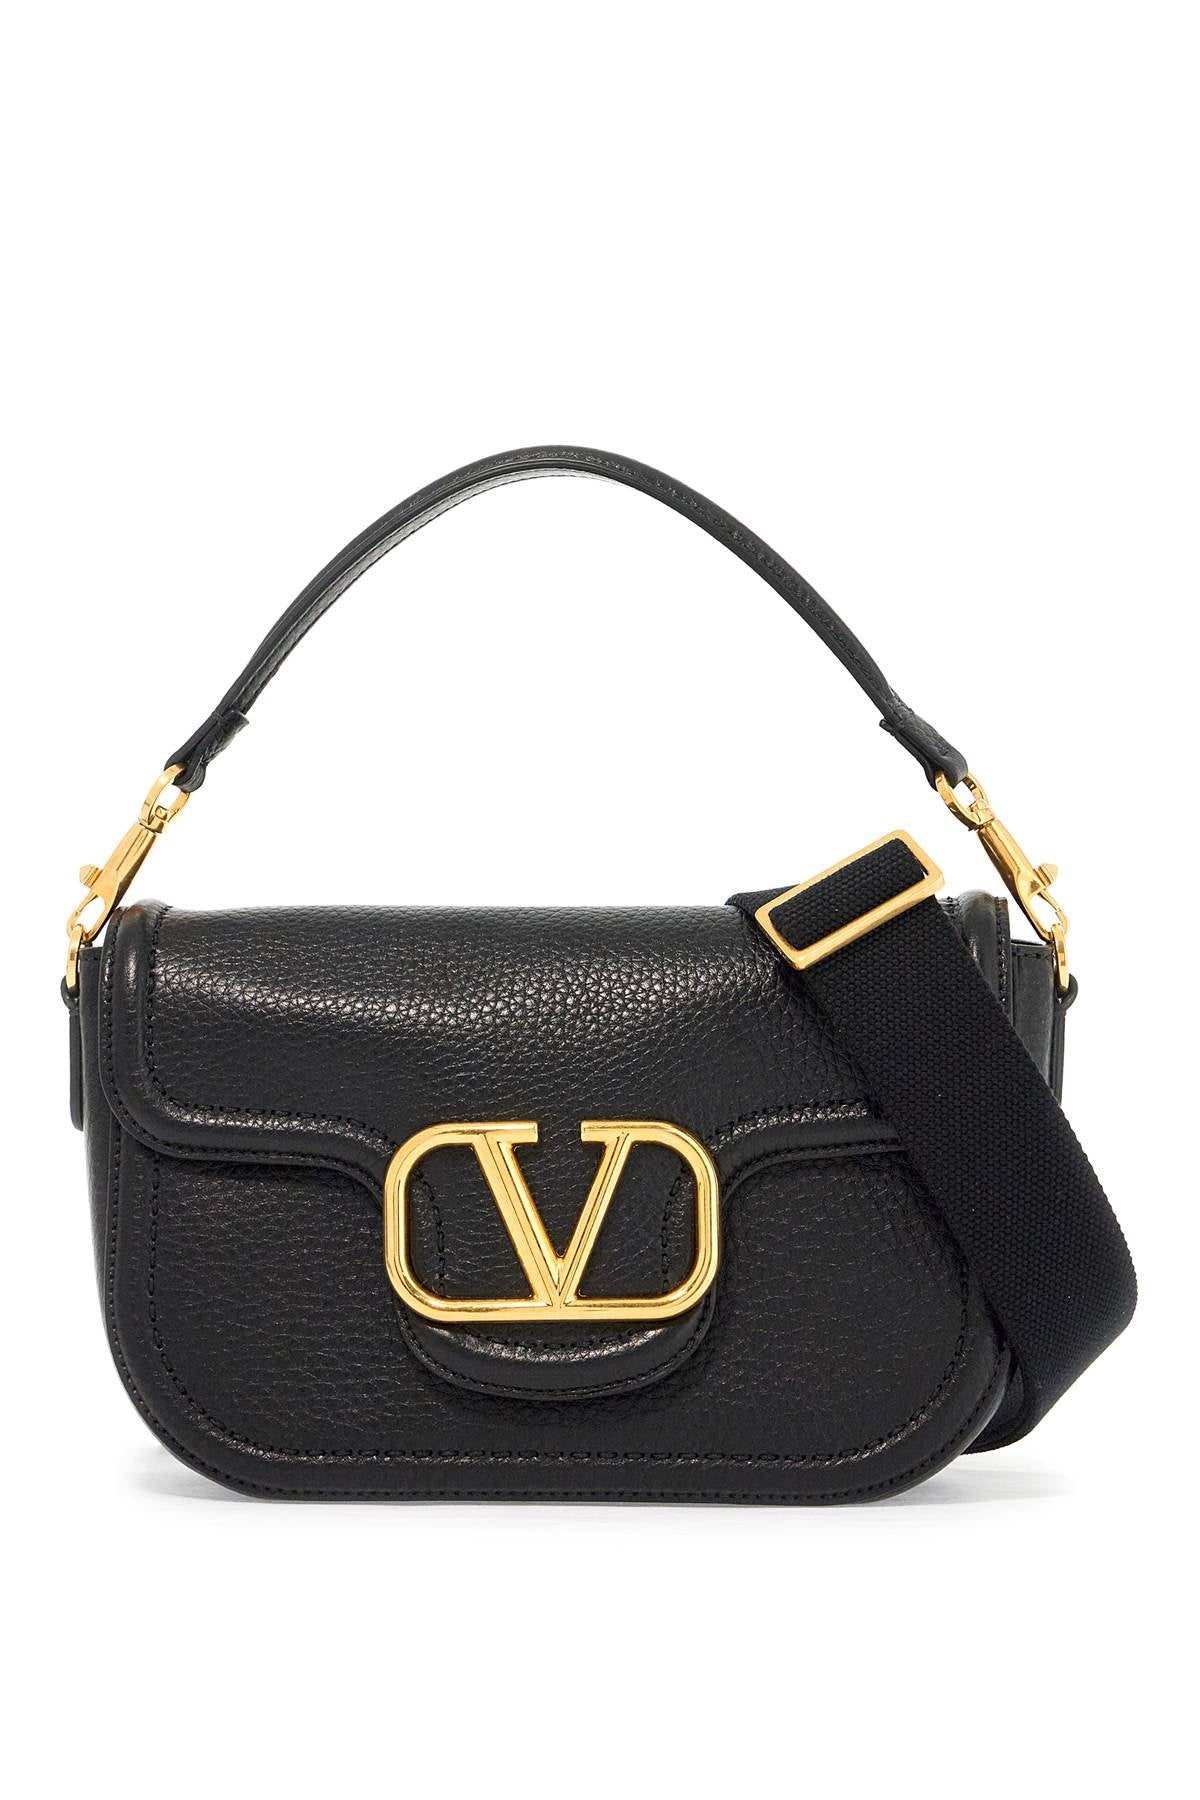 Valentino GARAVANI alltime hammered leather shoulder bag - Black